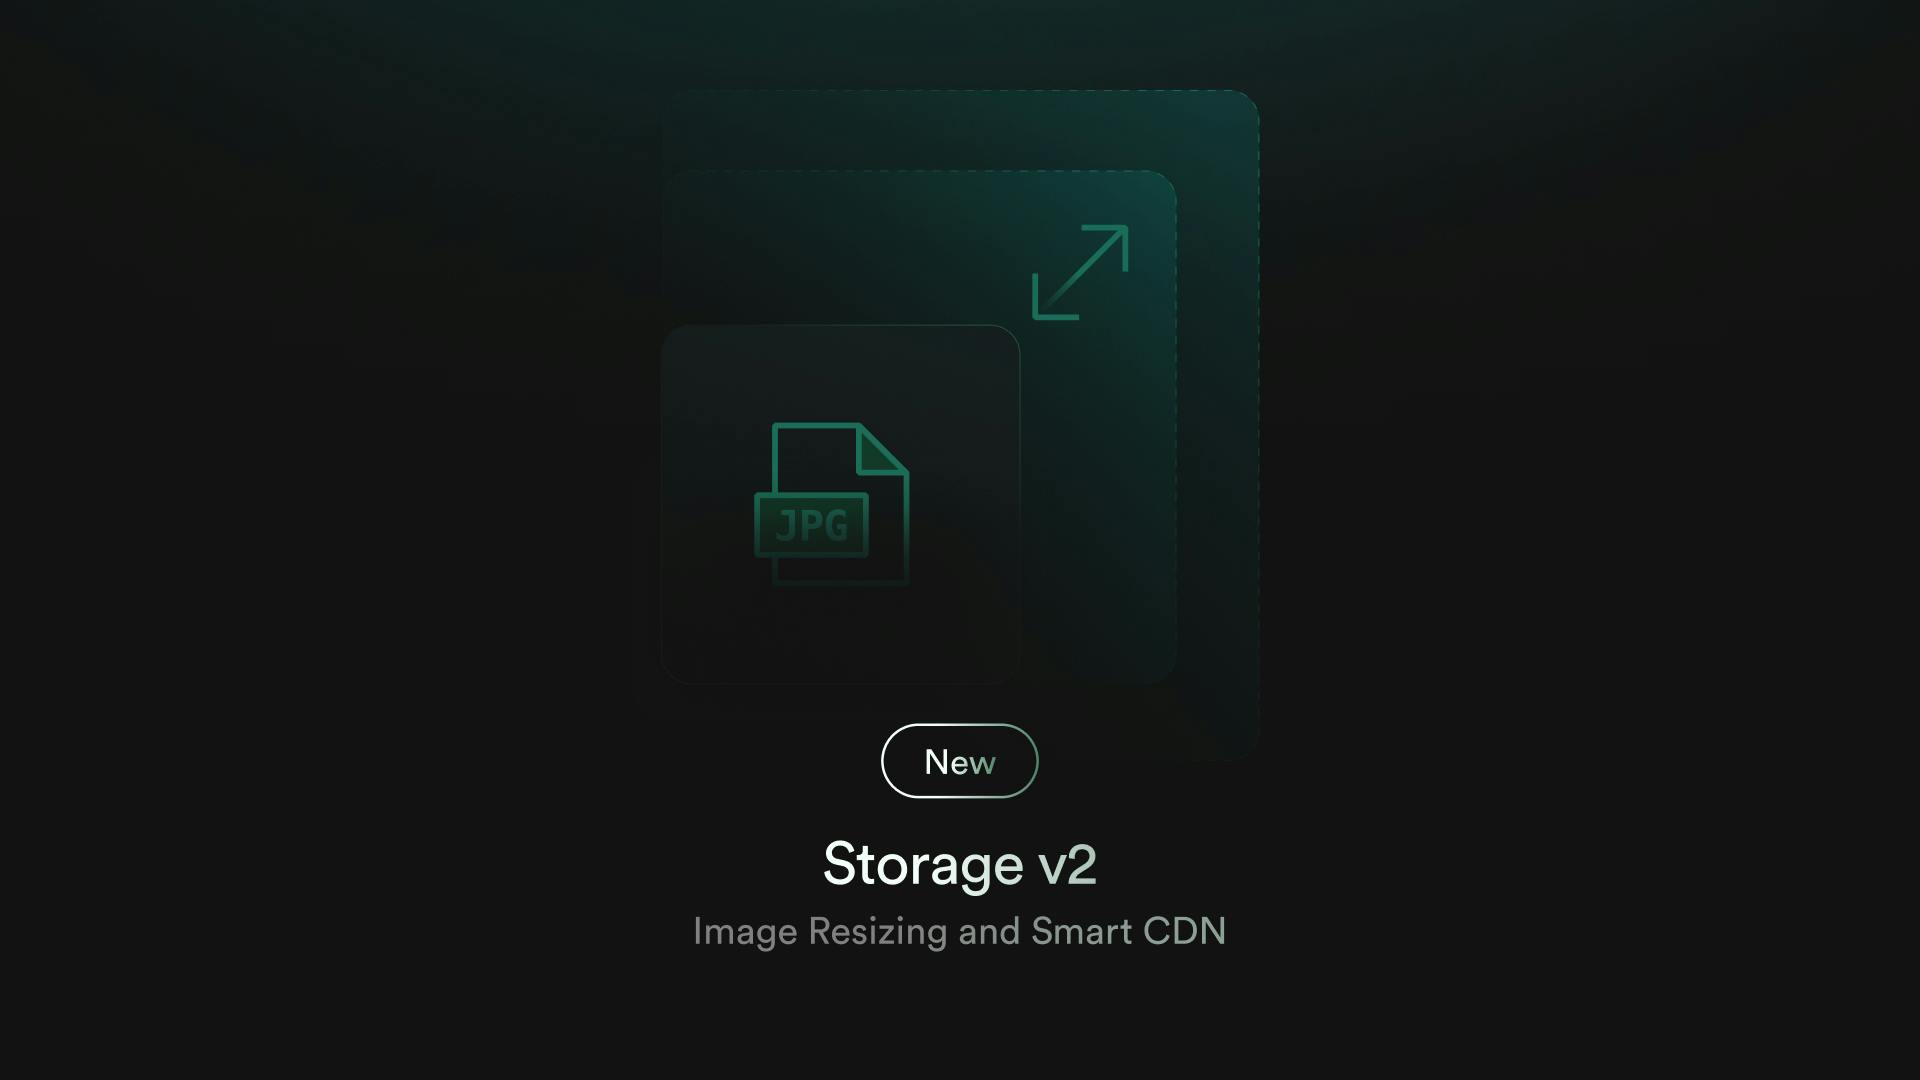 Storage v2: Image resizing and Smart CDN